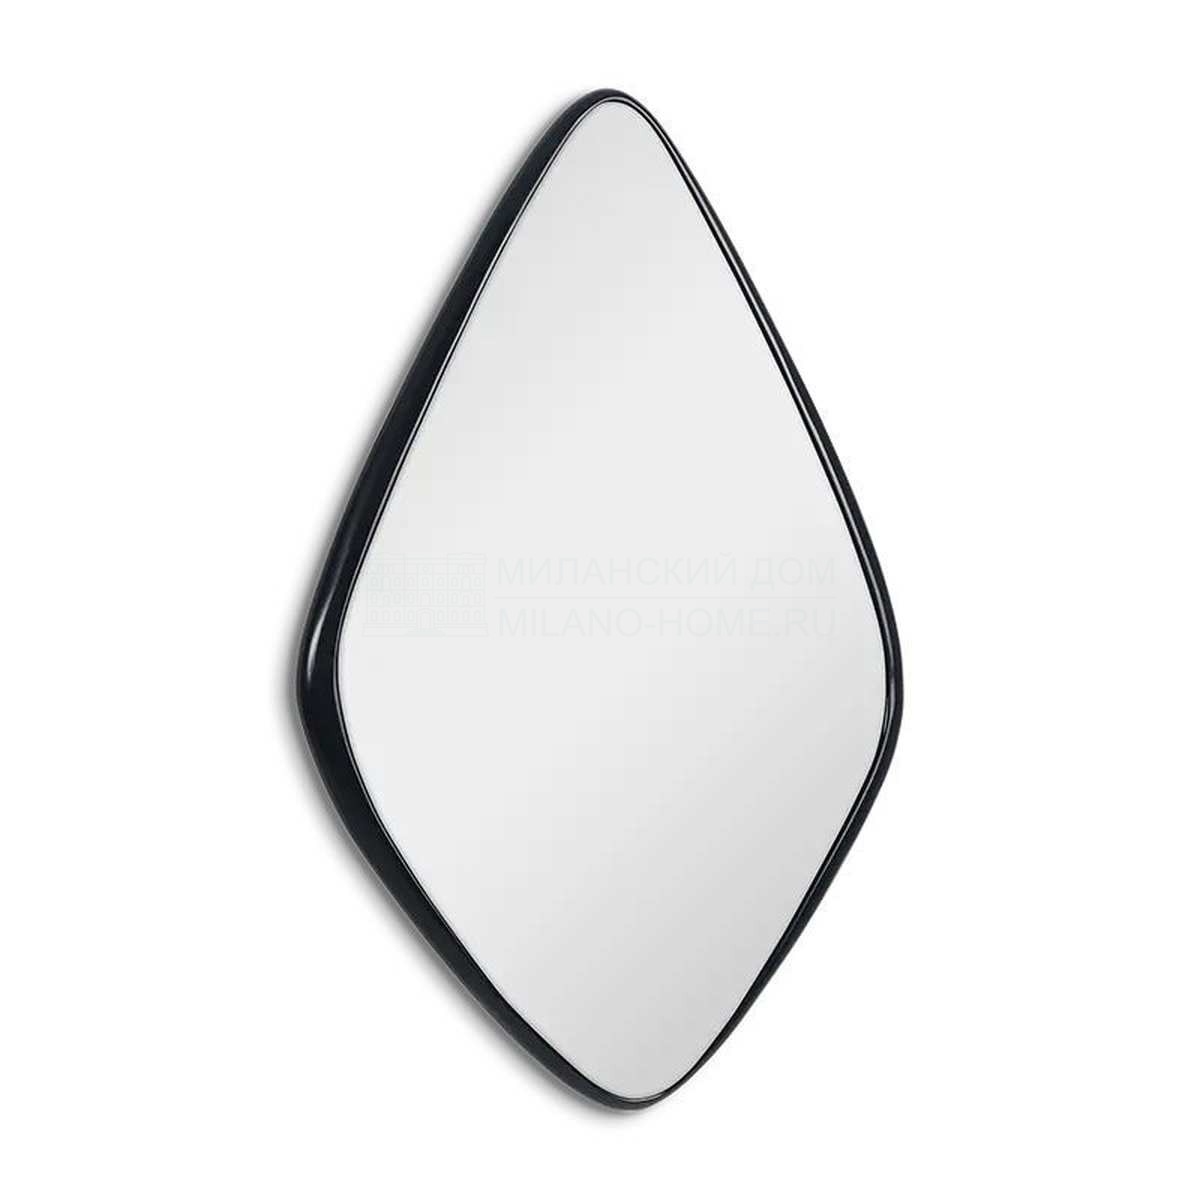 Зеркало настенное Aquilone ovale из США фабрики CHRISTOPHER GUY